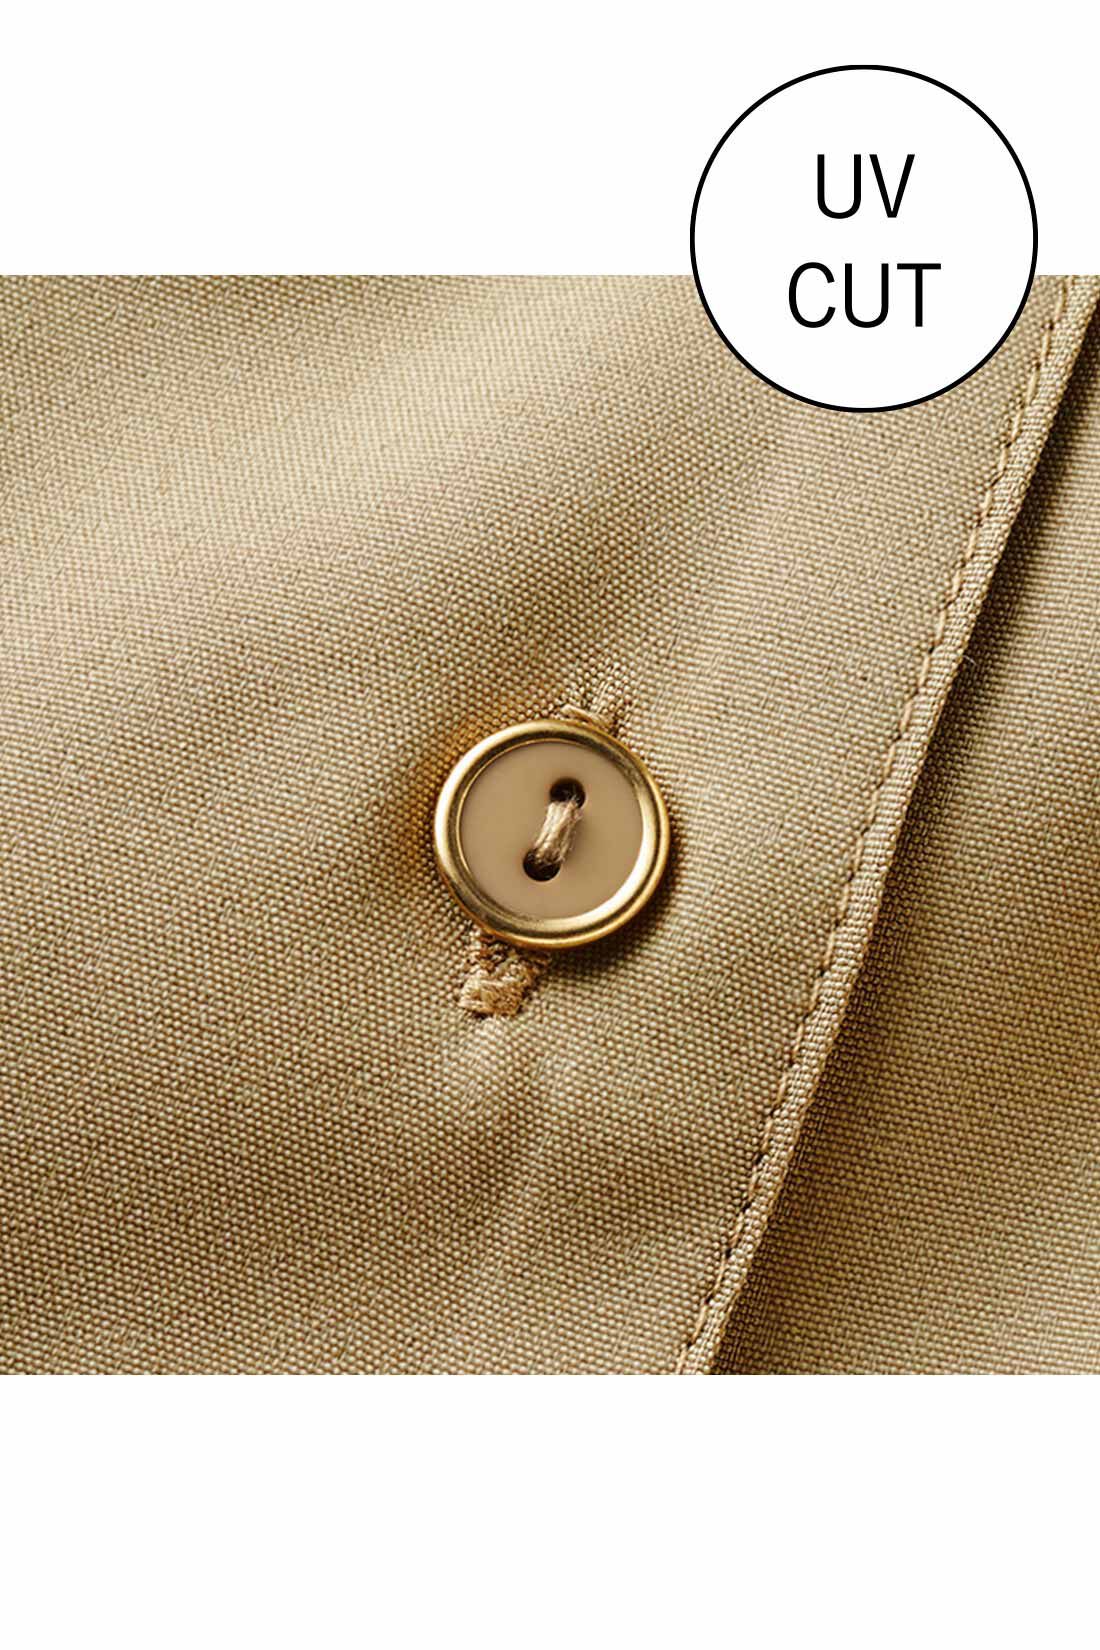 IEDIT|IEDIT[イディット]　一枚で好印象に着映える きれい見えワンピース〈ベージュ〉|しわになりにくく、洗濯機でお手入れ簡単なきれい見え素材。ゴールドの縁飾りボタンがアクセント。